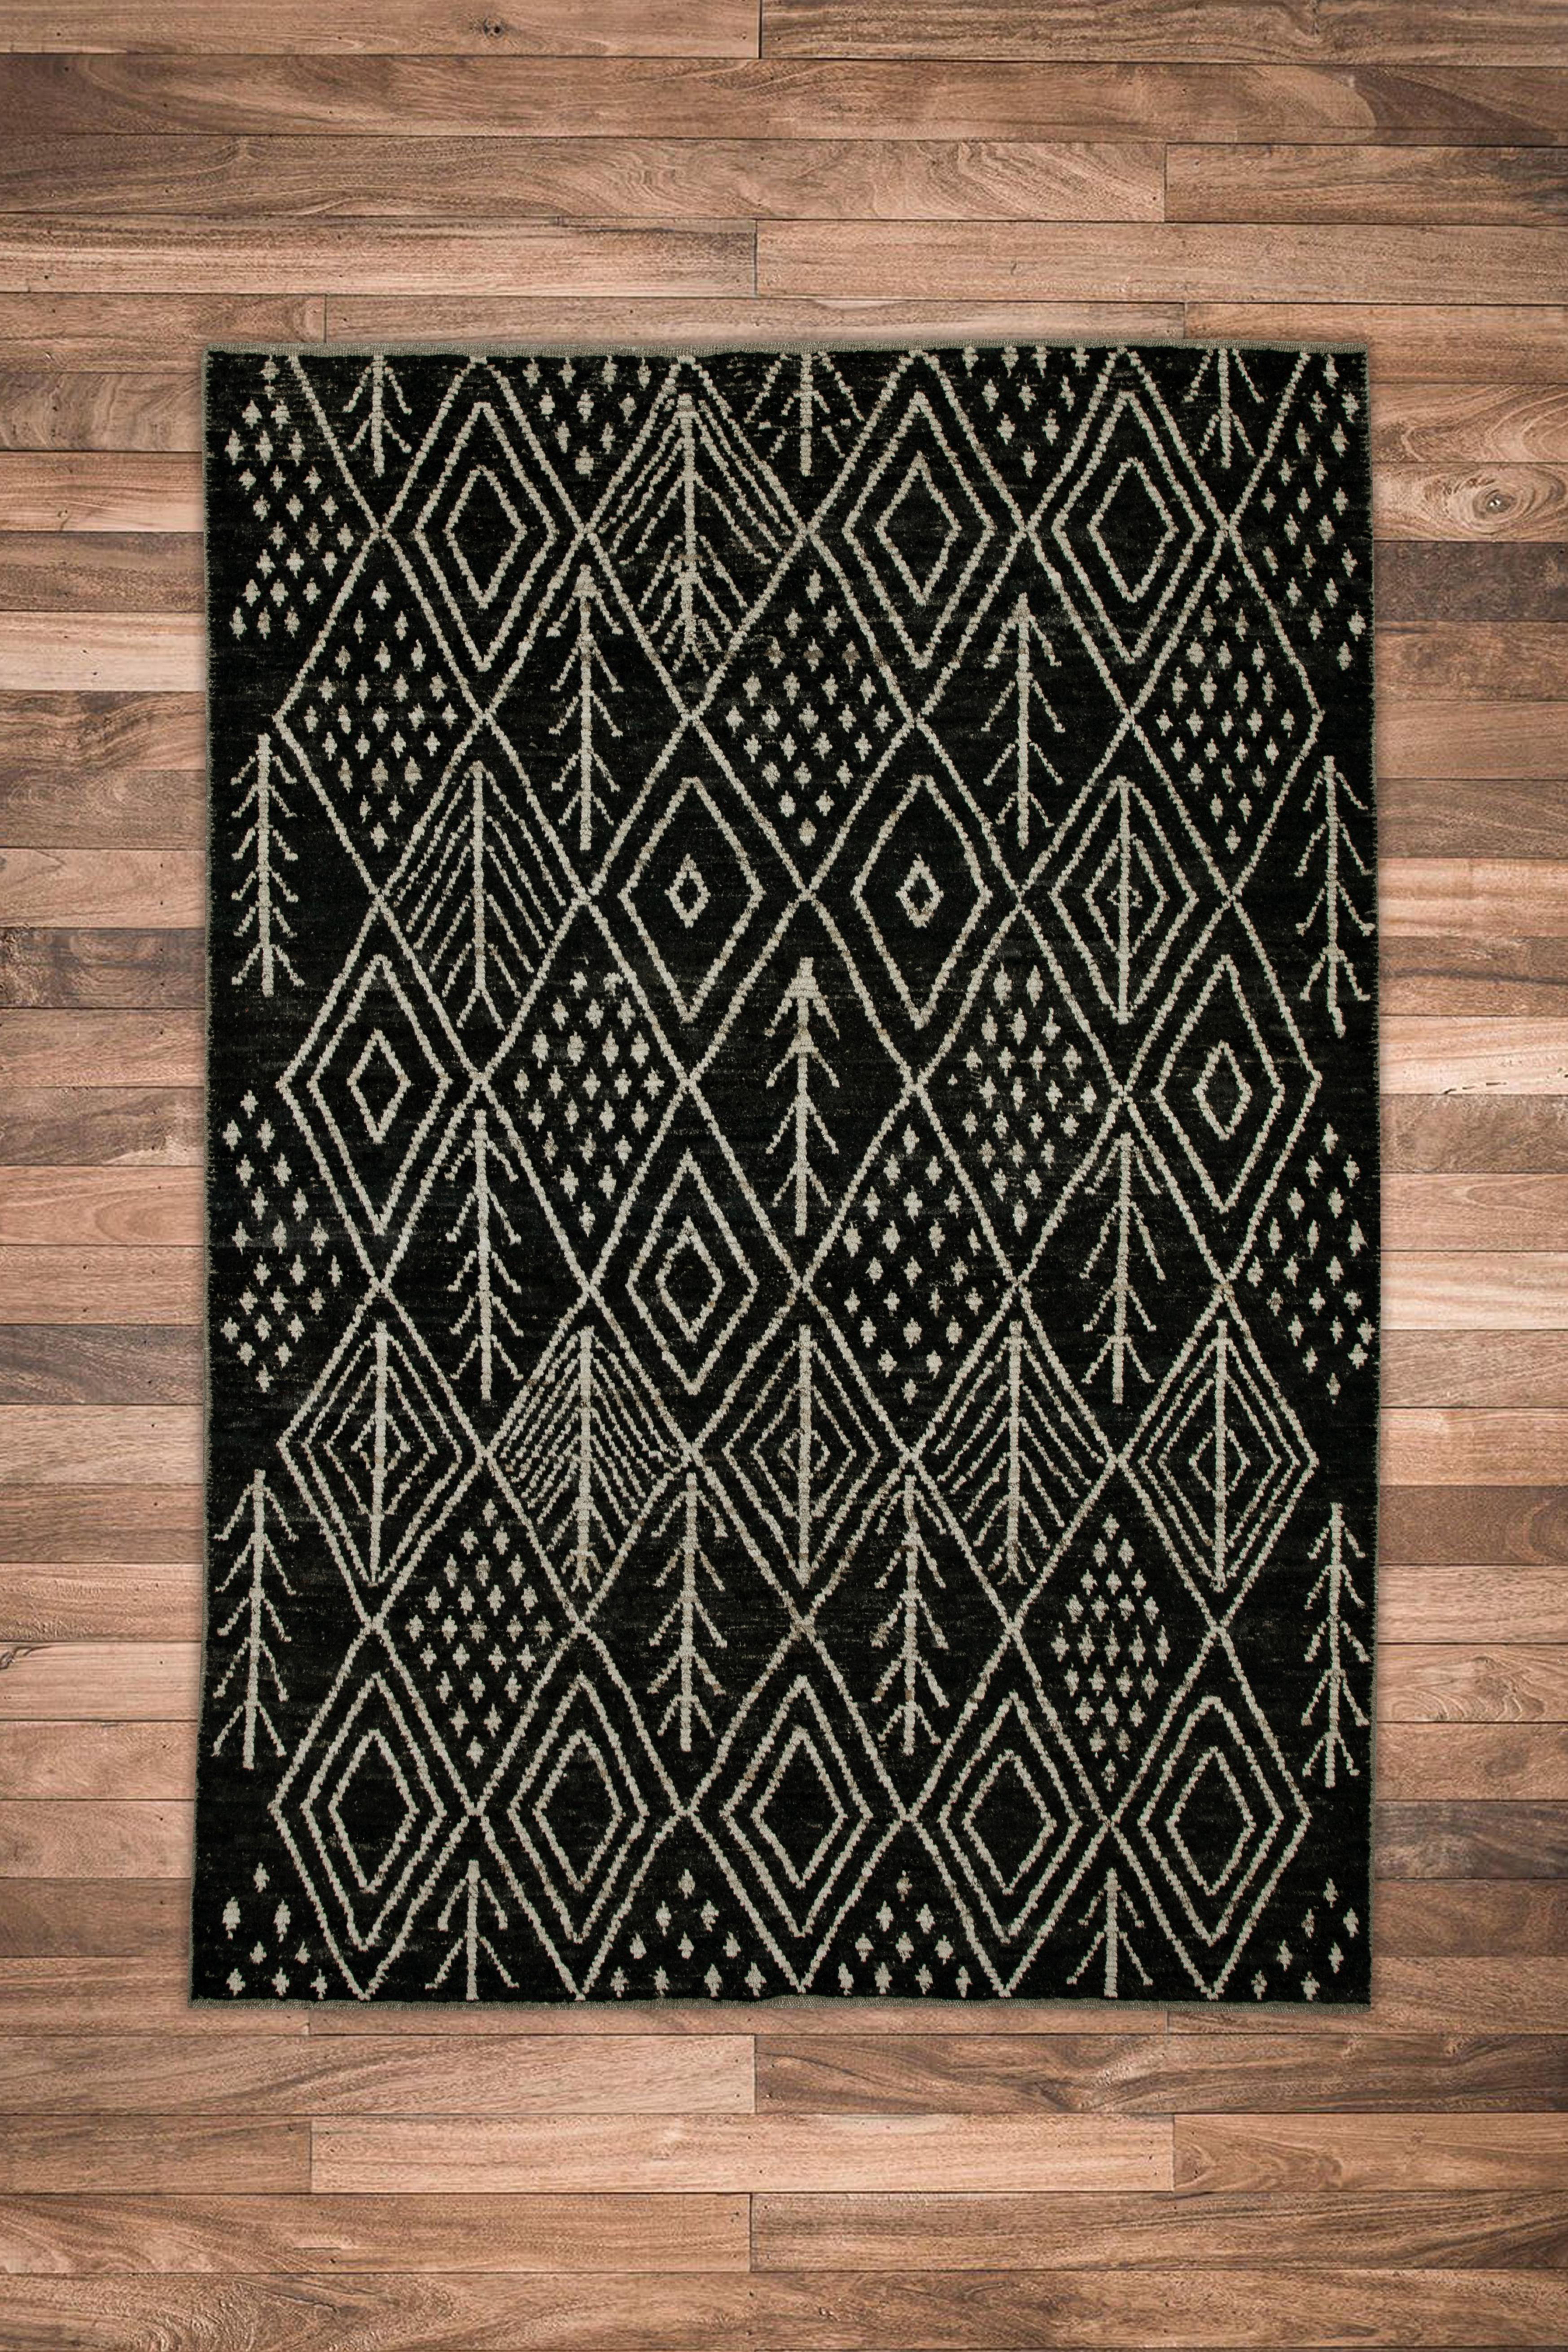 Handgefertigter moderner türkischer Teppich aus Wolle in geometrischem Design in Schwarz & Weiß 6'3